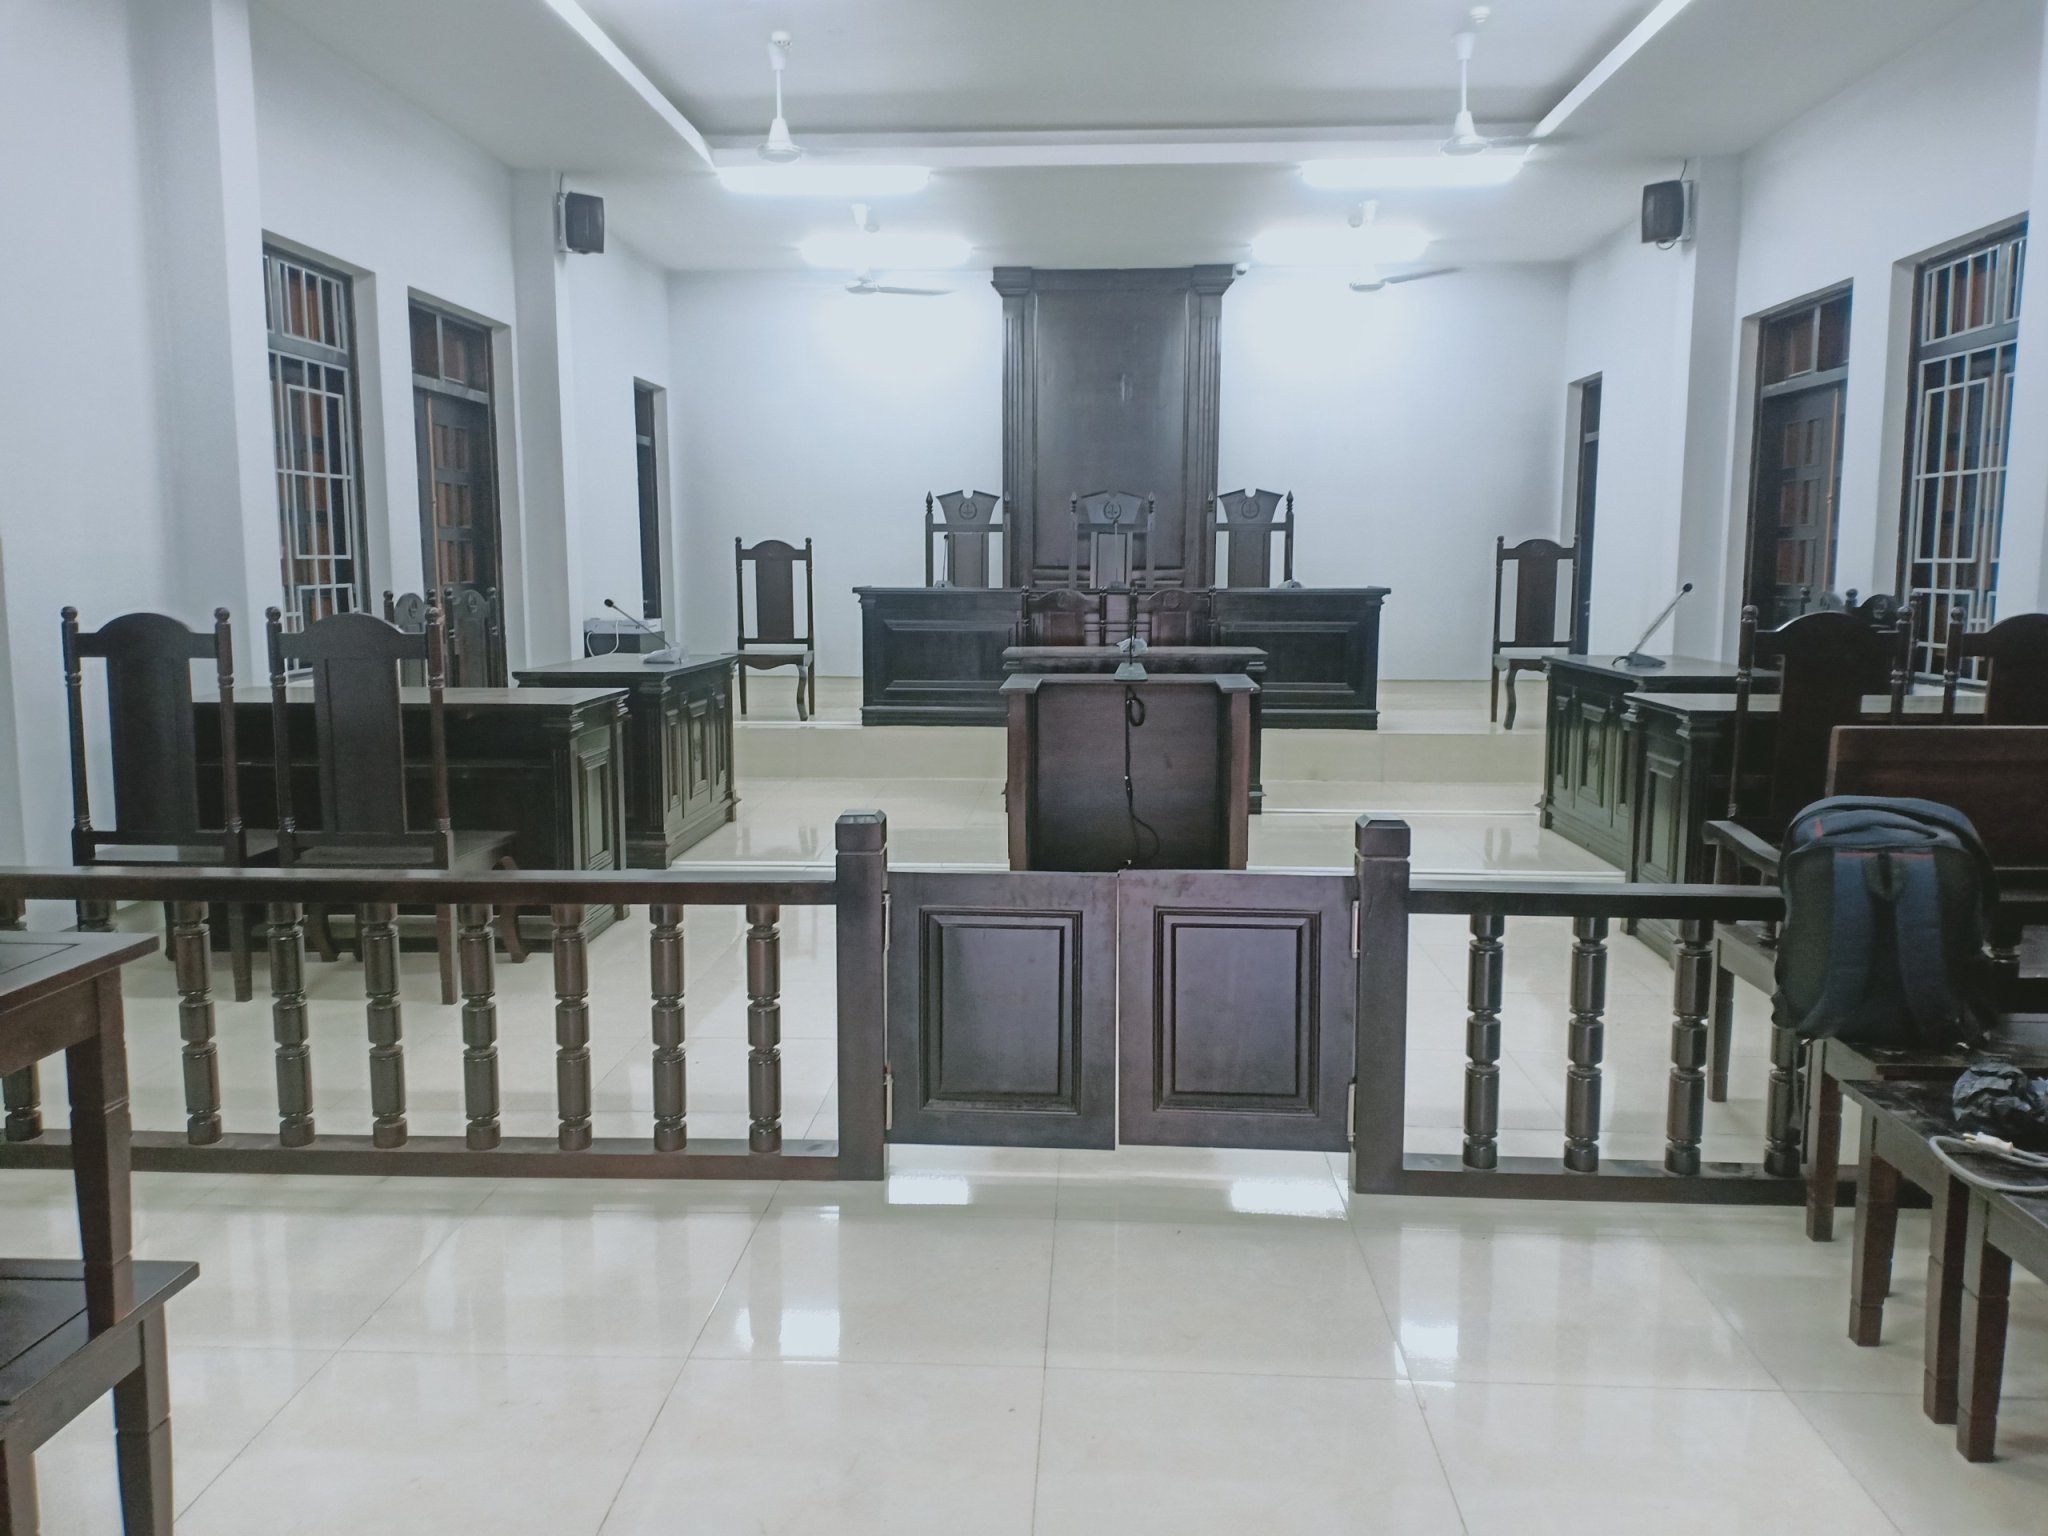 Phòng xét xử huyện Chưpưh tỉnh Gia Lai